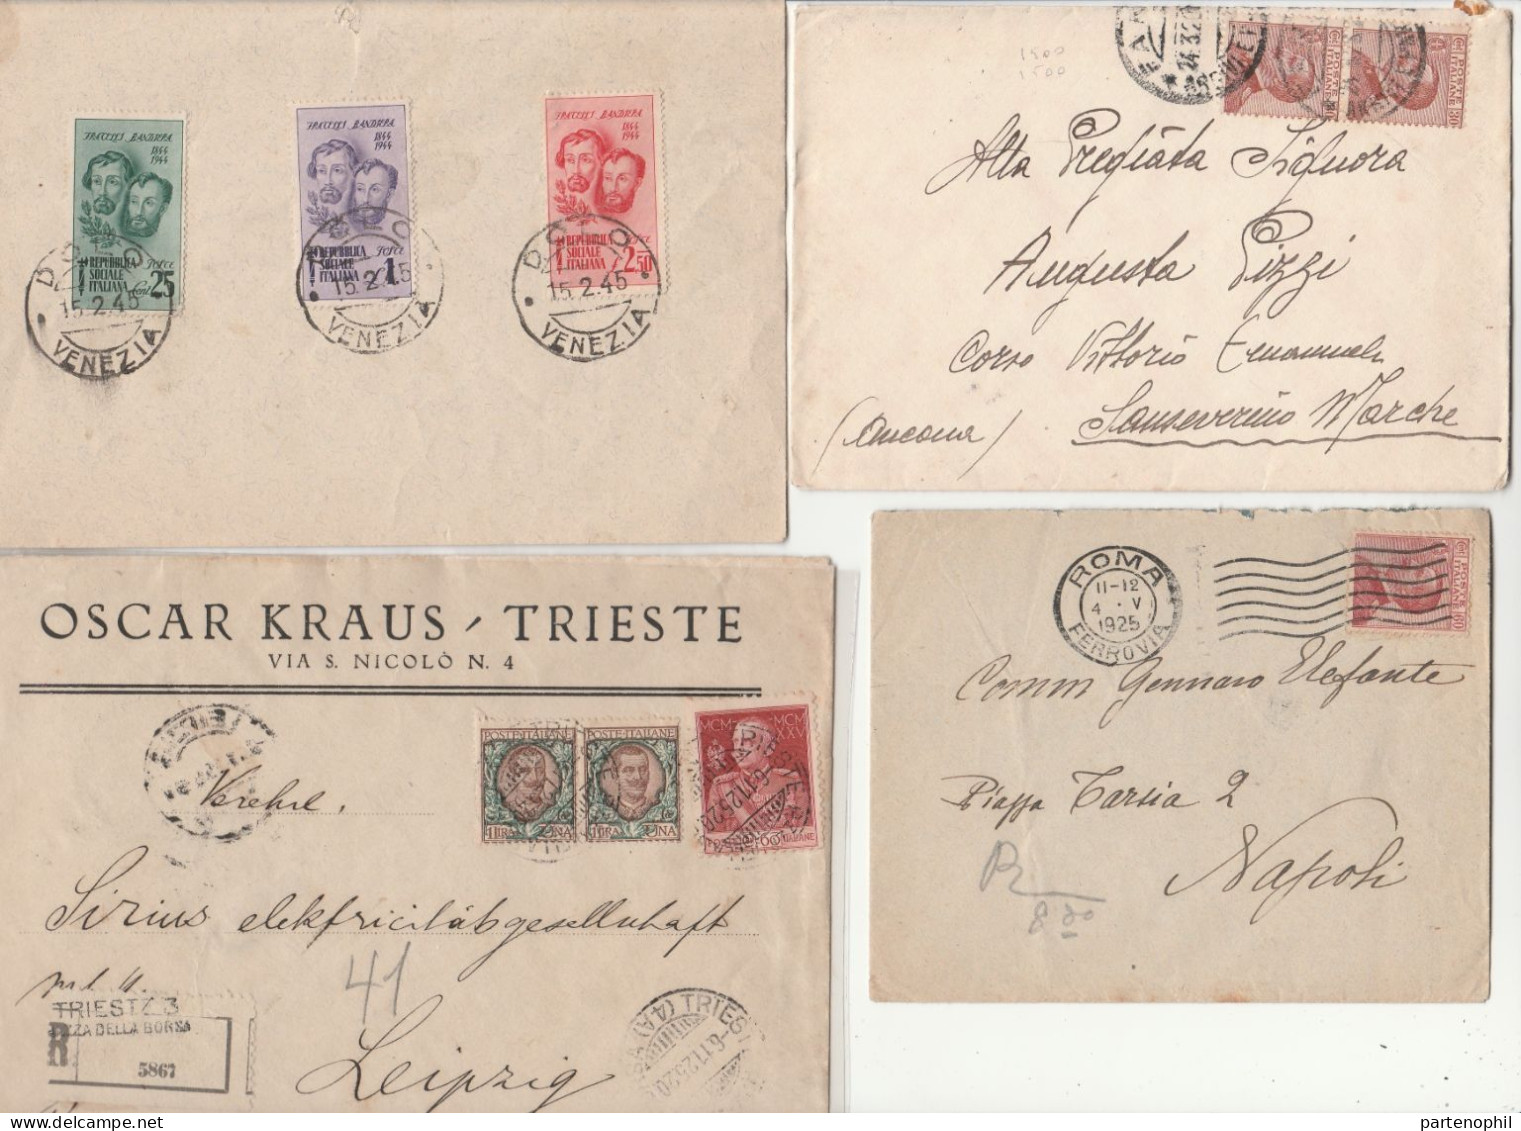 660 - Italia Regno - R.S.I. - Luogotenenza - Insieme di oltre 50 lettere, cartoline ecc., con diverse presenze non comun